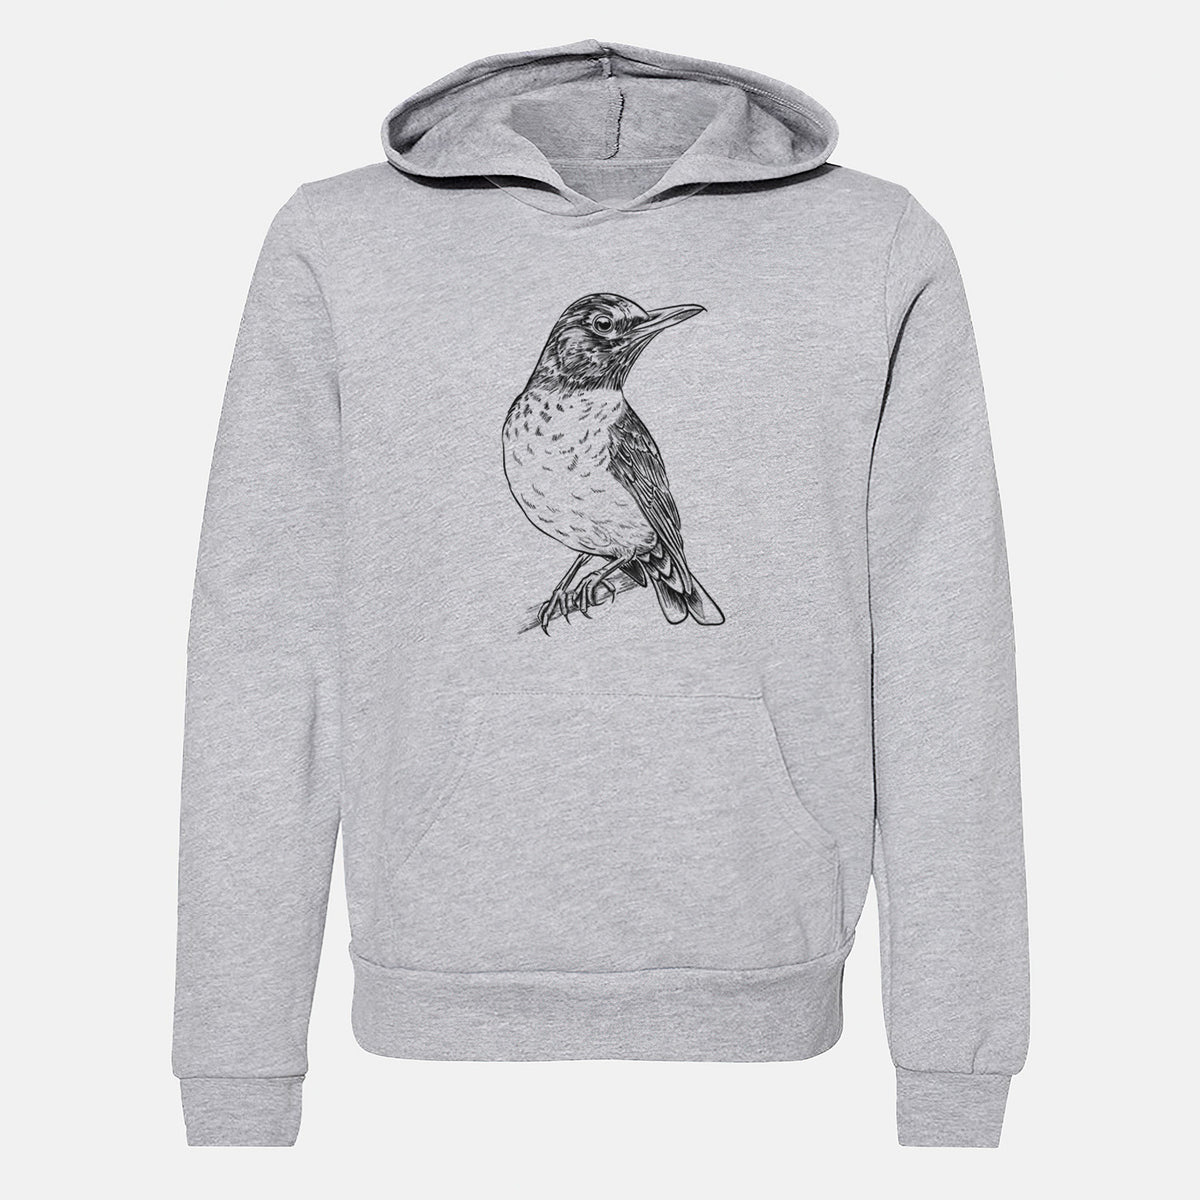 American Robin - Turdus migratorius - Youth Hoodie Sweatshirt